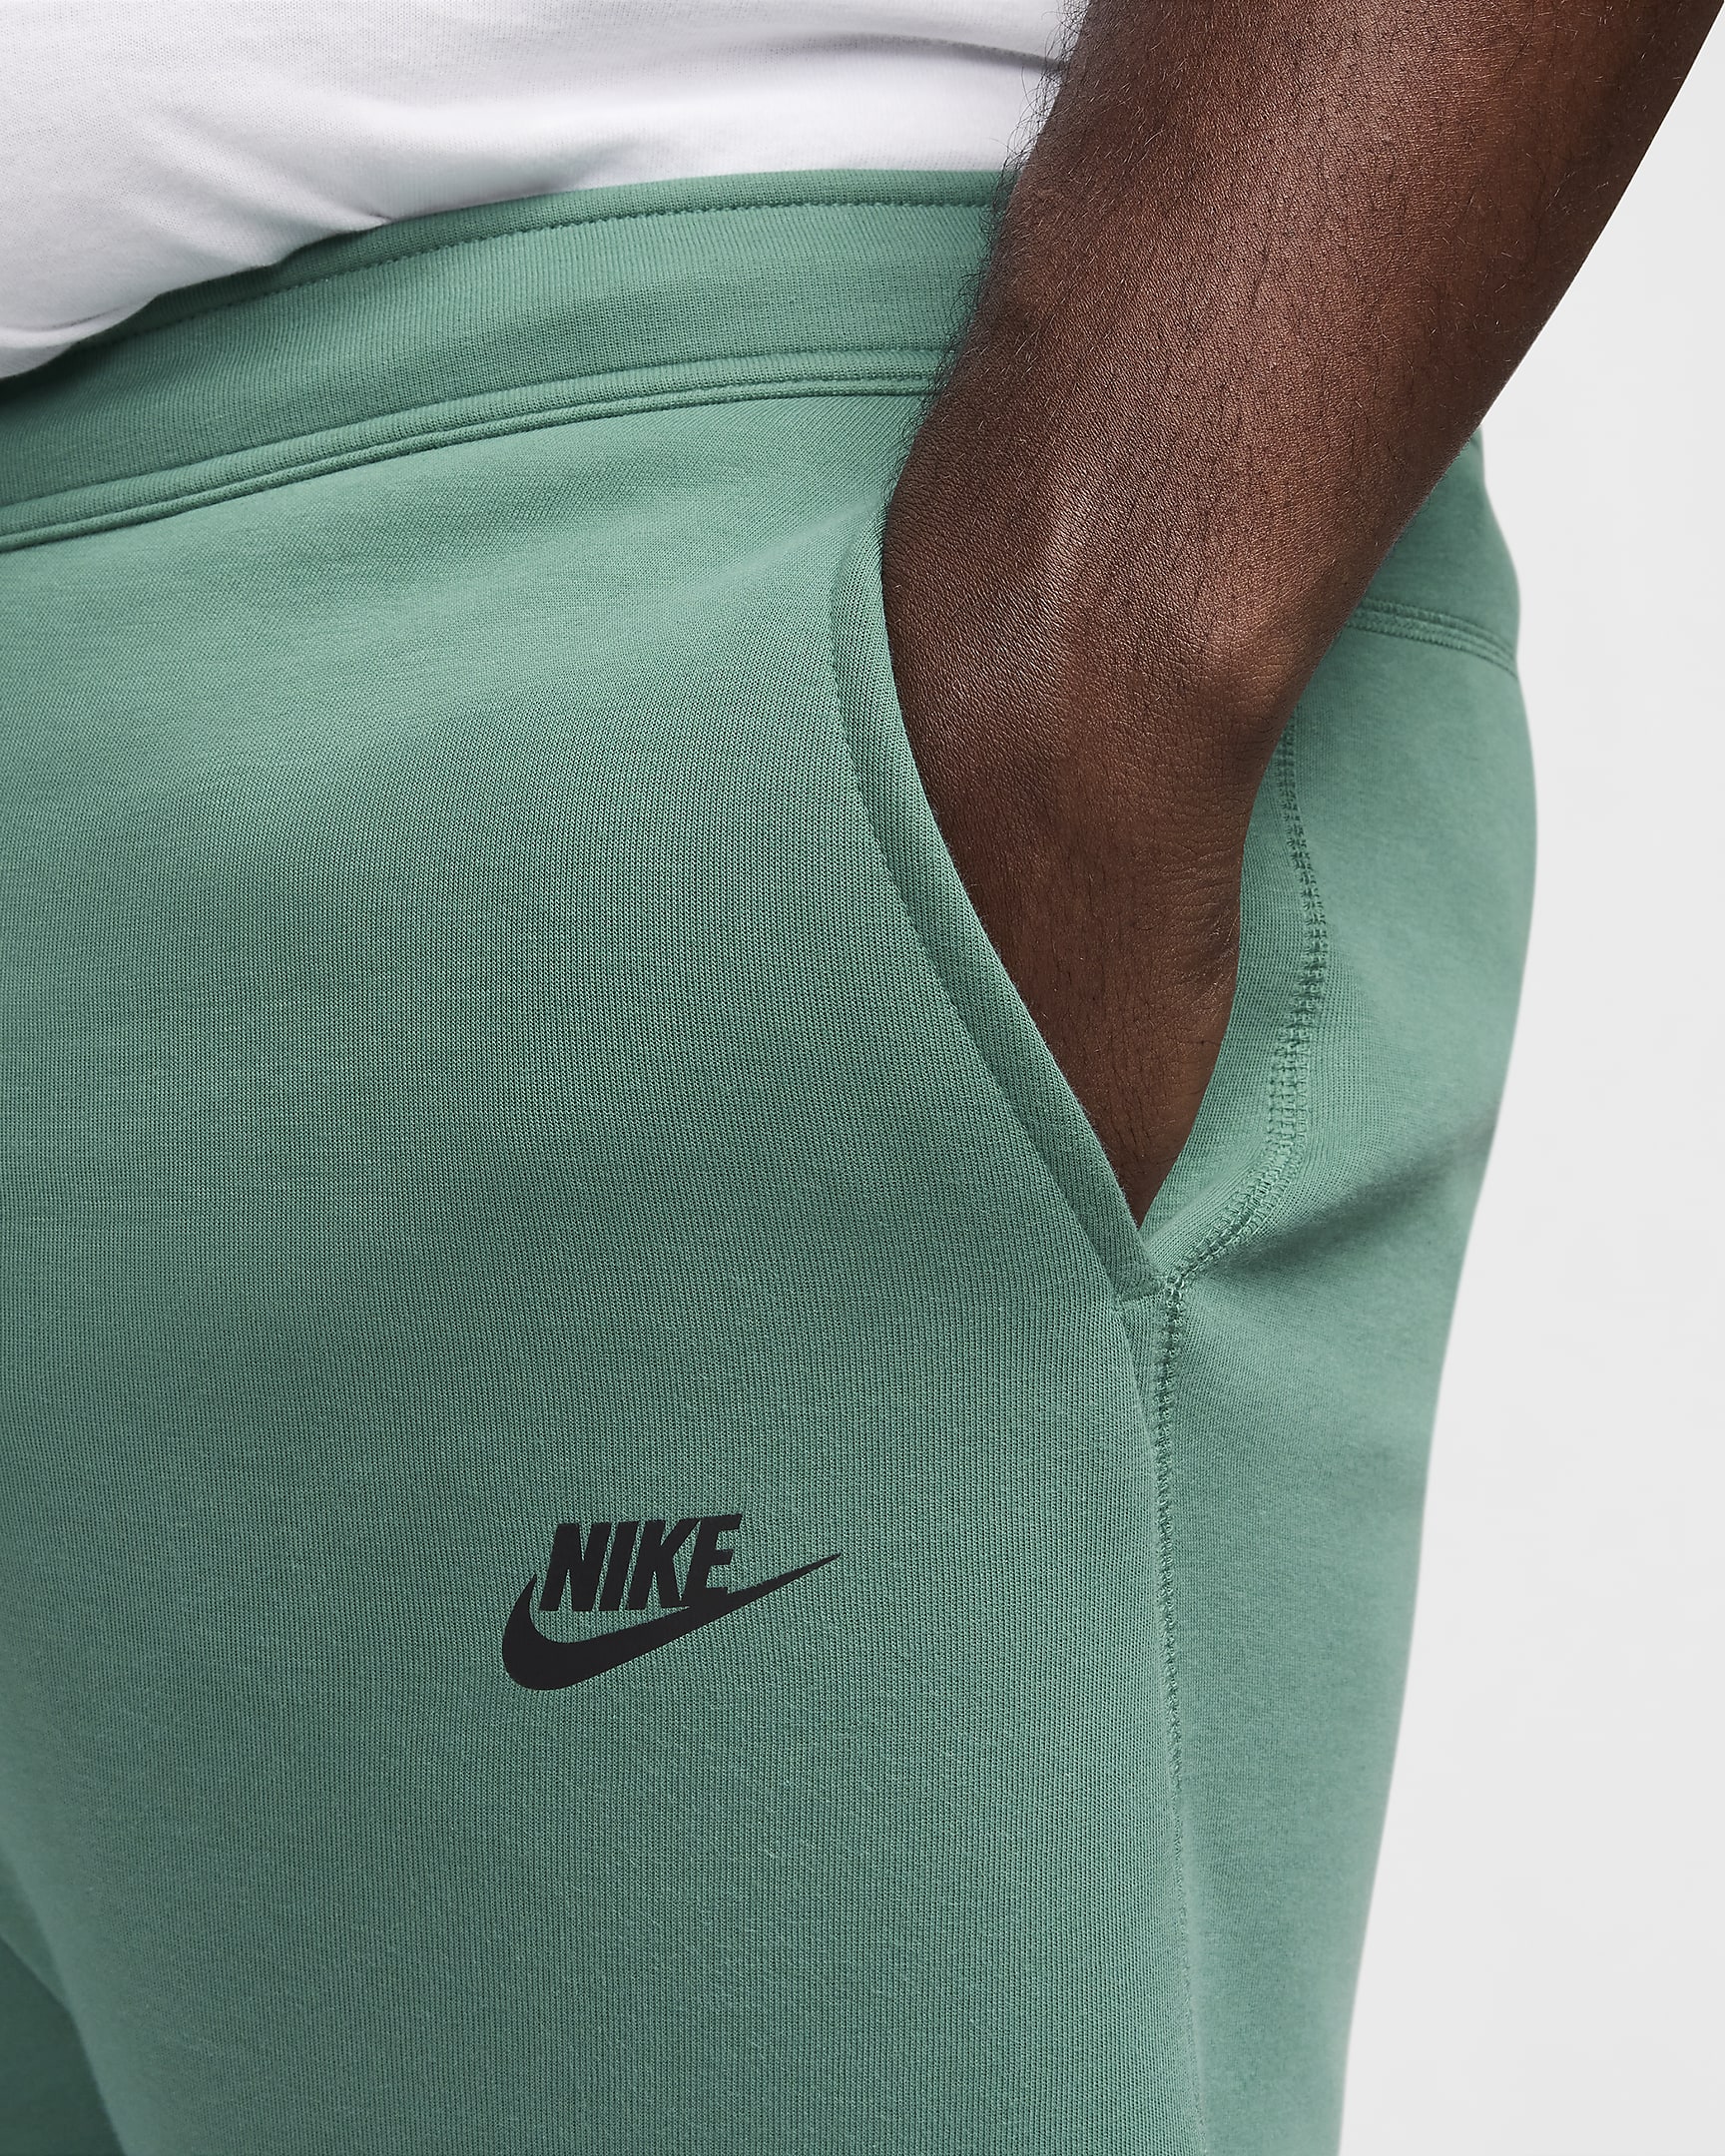 Nike Sportswear Tech Fleece Men's Joggers - Bicoastal/Black